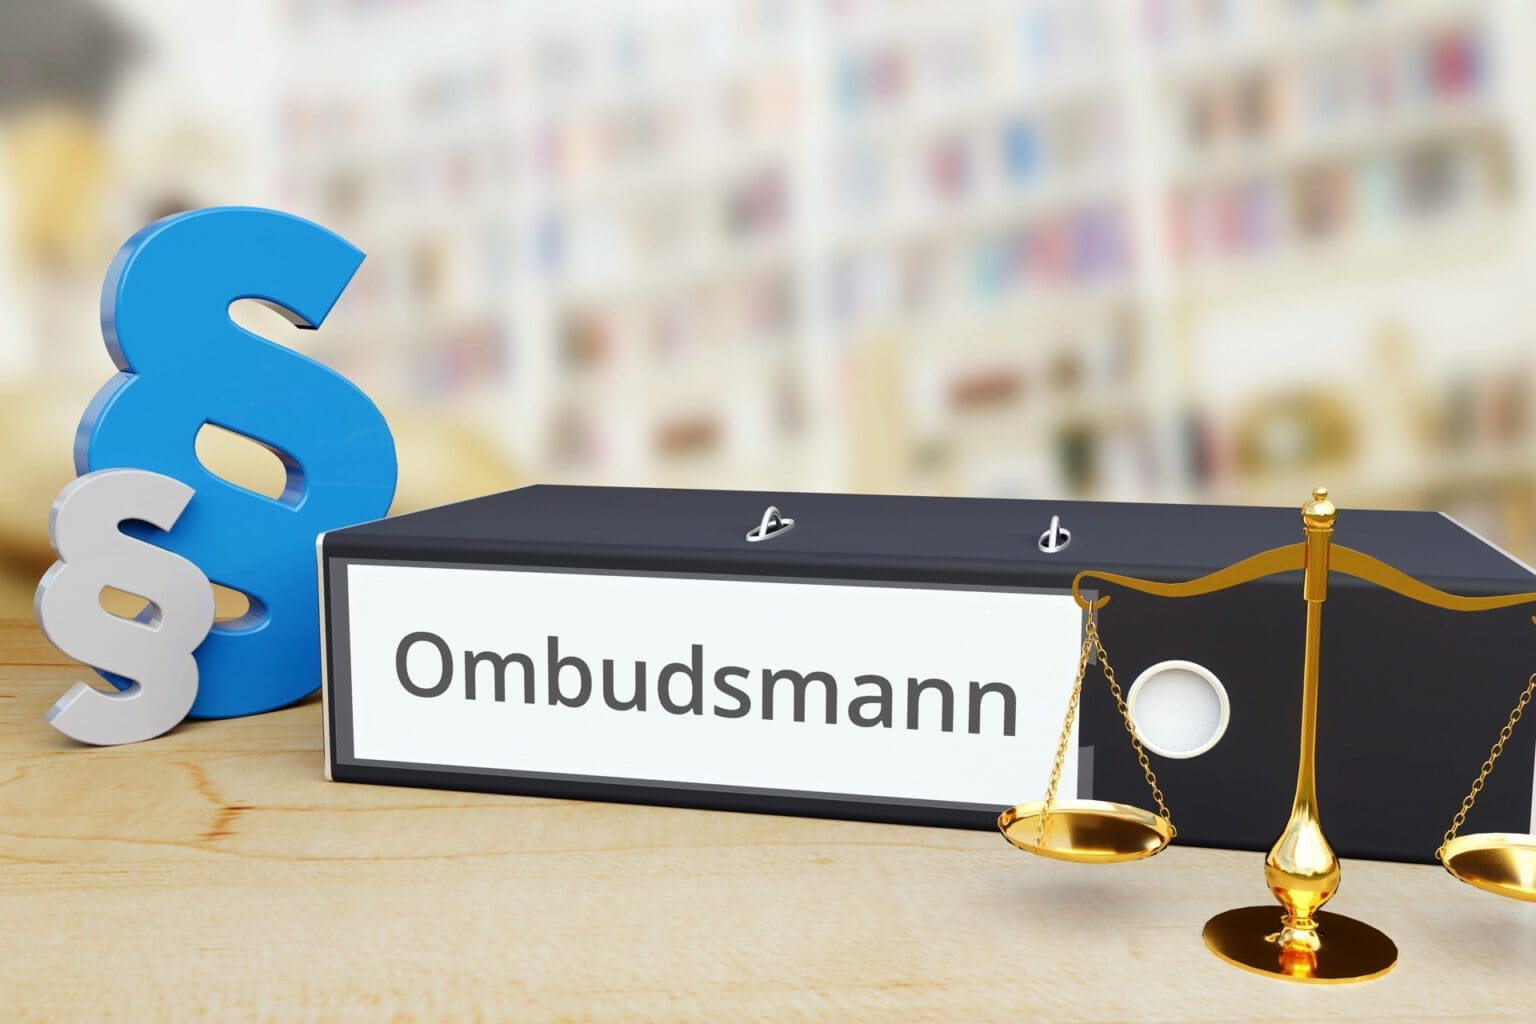 Ärger mit Versicherung: Ombudsmann einschalten? Verfahren, Erfahrungen, Alternativen. (© MQ-Illustrations / stock.adobe.com)